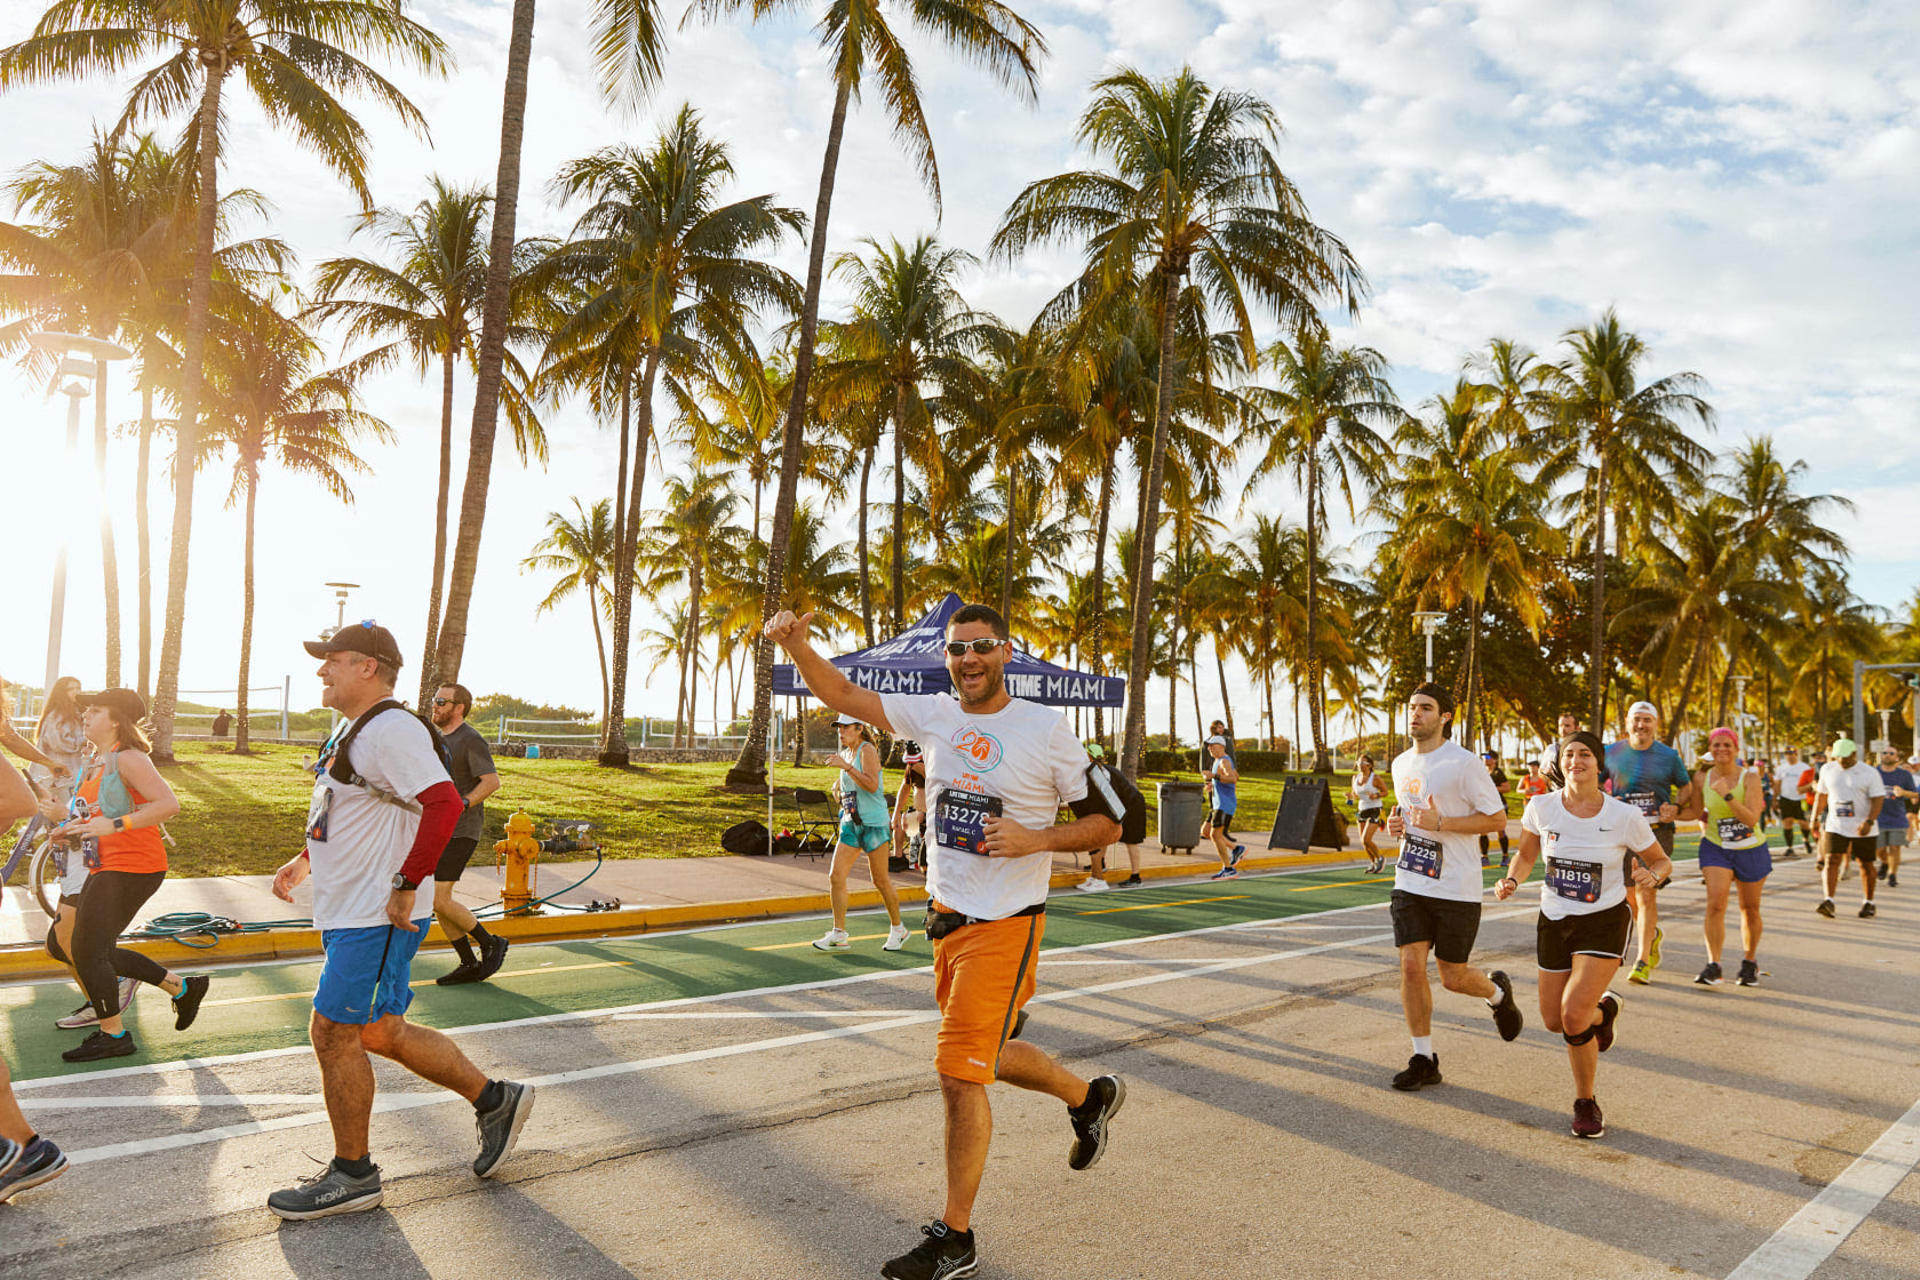 Fotografía de archivo cedida por The Miami Marathon donde aparecen unos participantes en el Maratón Life Time en Miami, Florida. EFE/The Miami Marathon /SOLO USO EDITORIAL /NO VENTAS /SOLO DISPONIBLE PARA ILUSTRAR LA NOTICIA QUE ACOMPAÑA /CRÉDITO OBLIGATORIO
